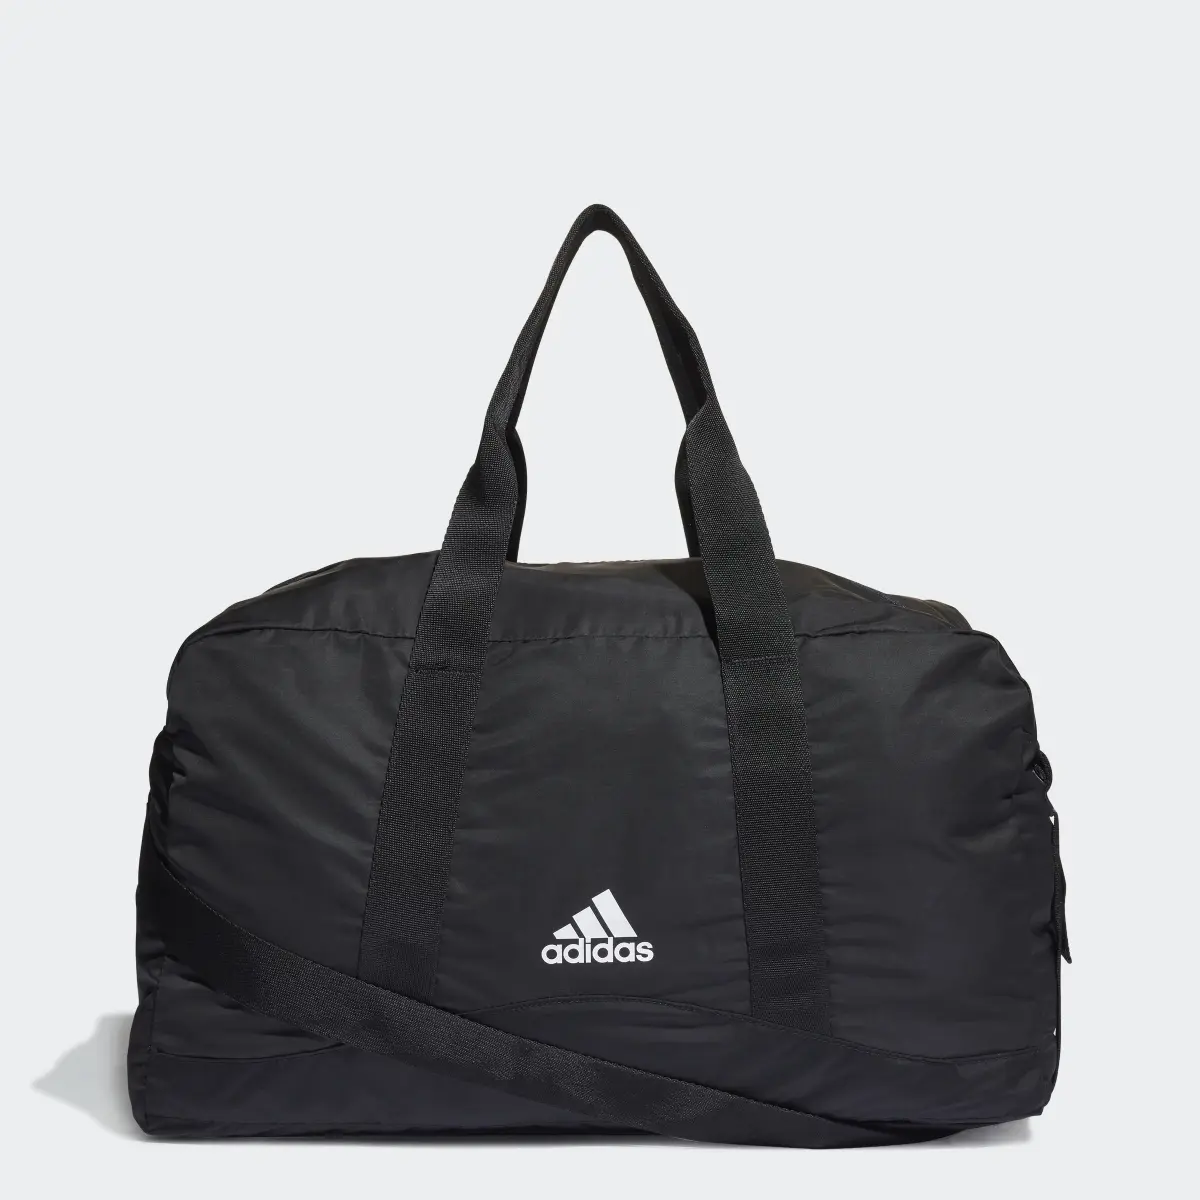 Adidas Sport Duffel Bag. 1